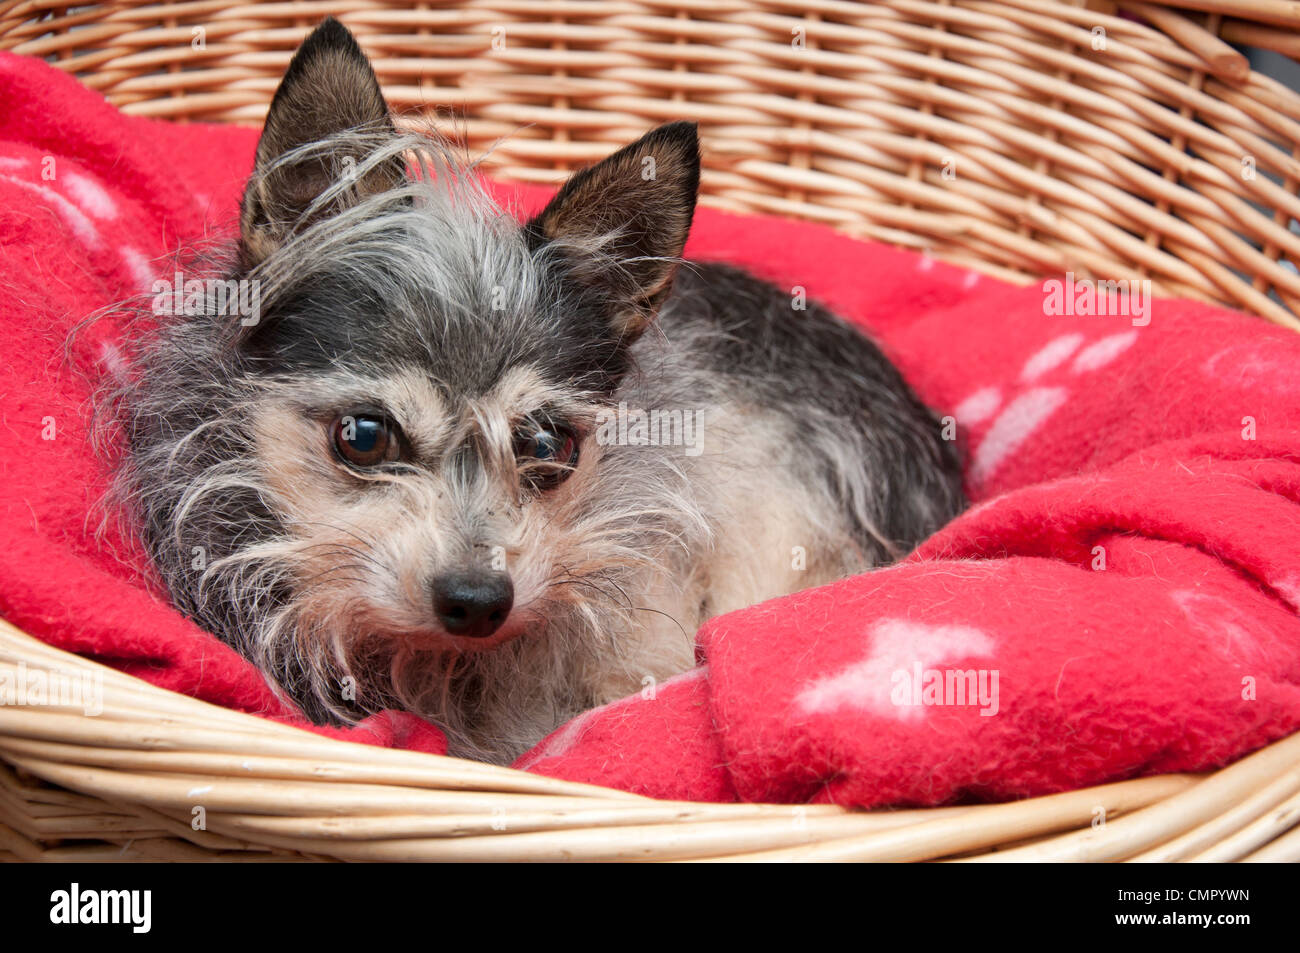 Mignon petit chien terrier, chihuahua / cross, assis dans son panier. Banque D'Images